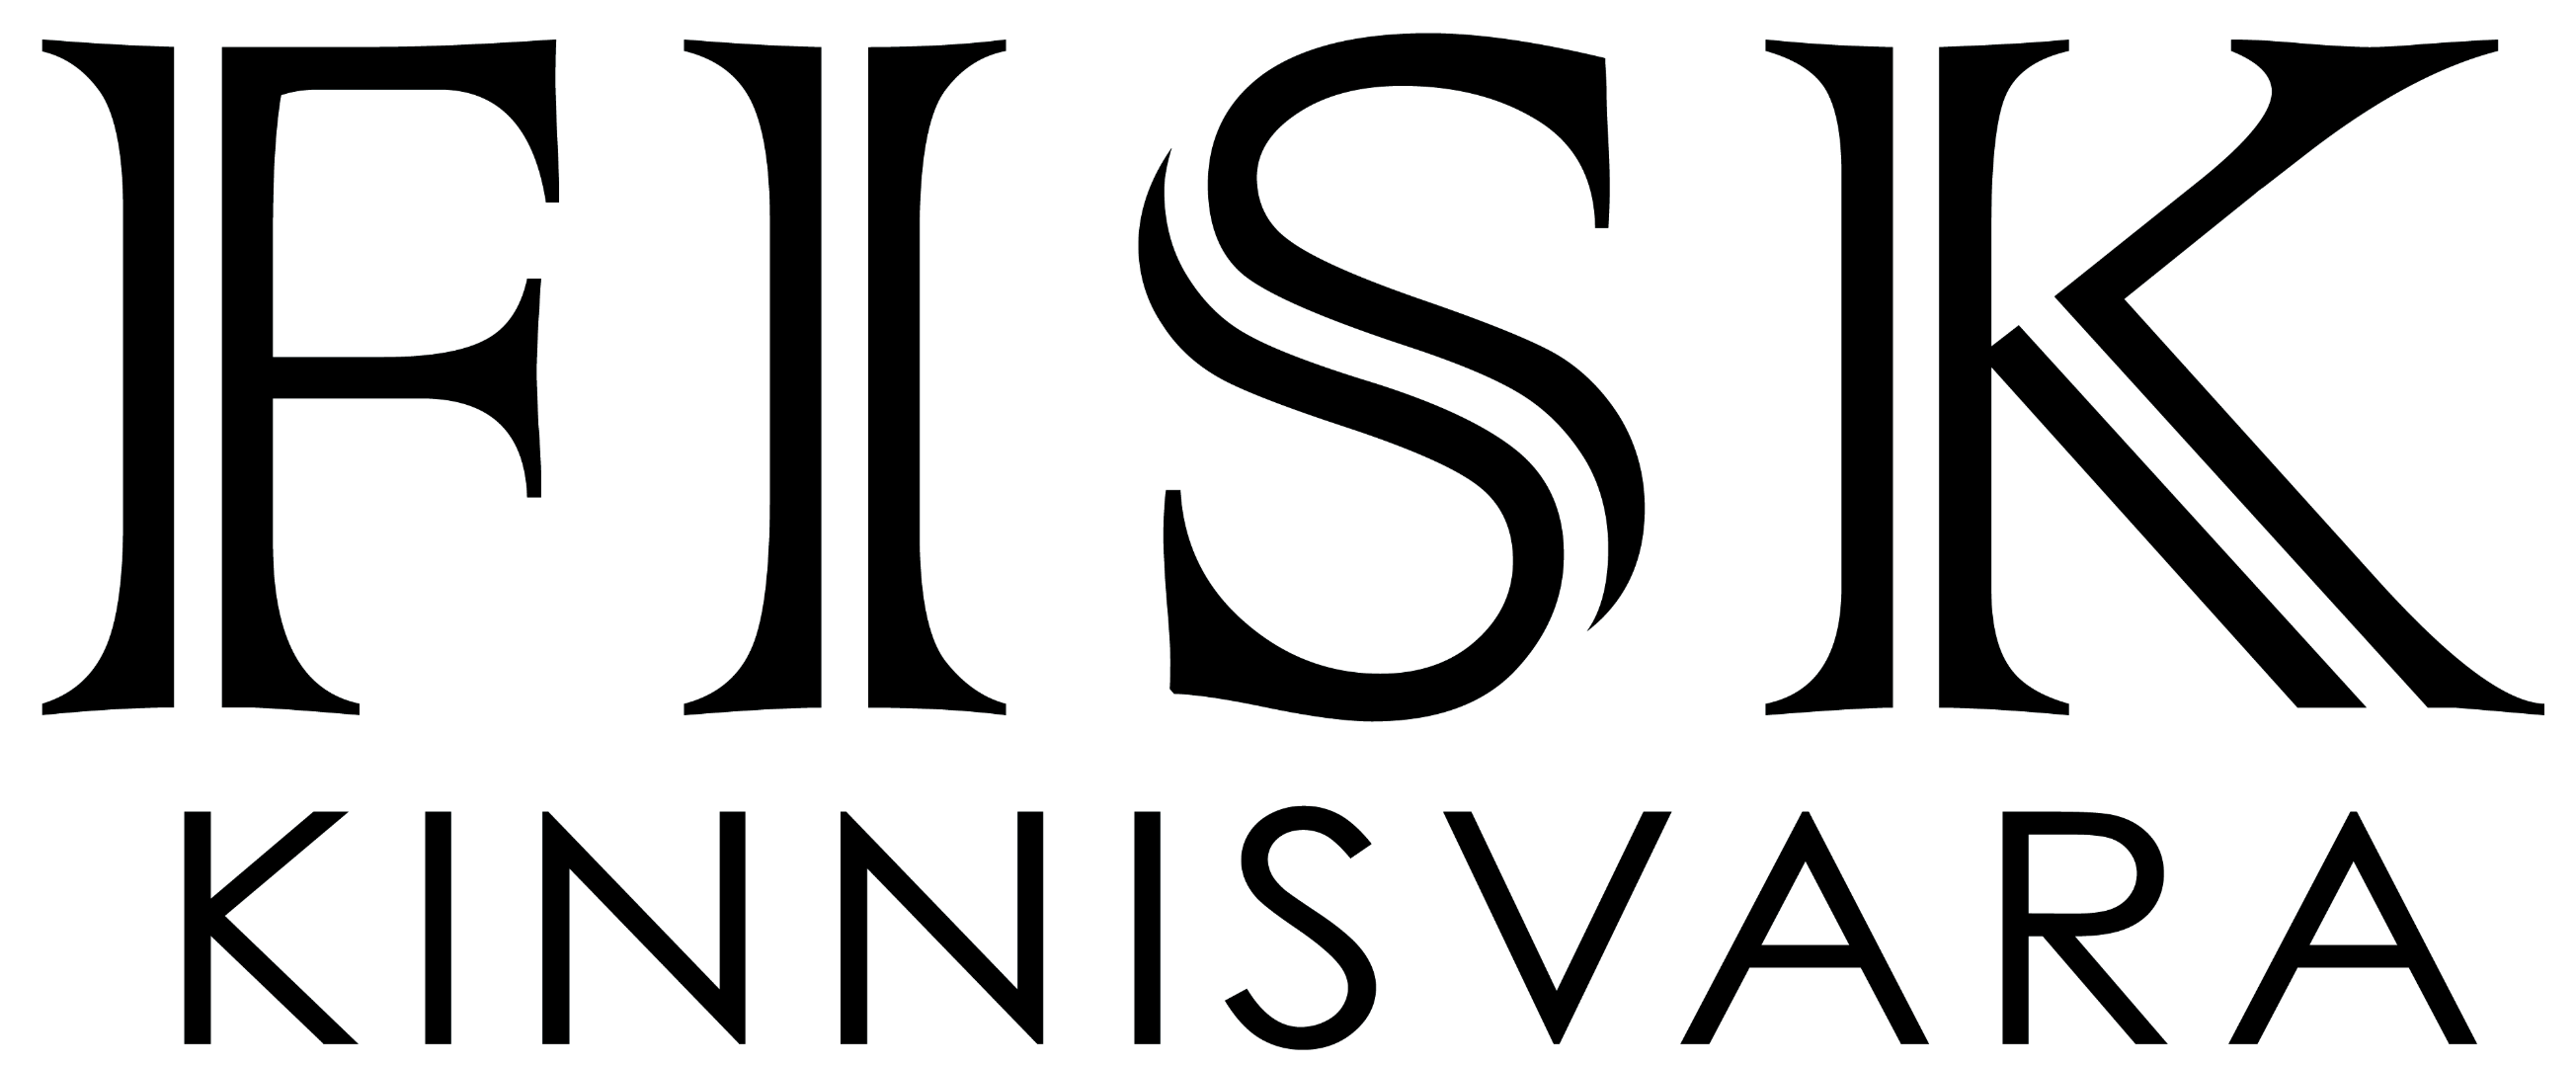 fisk-logo.png